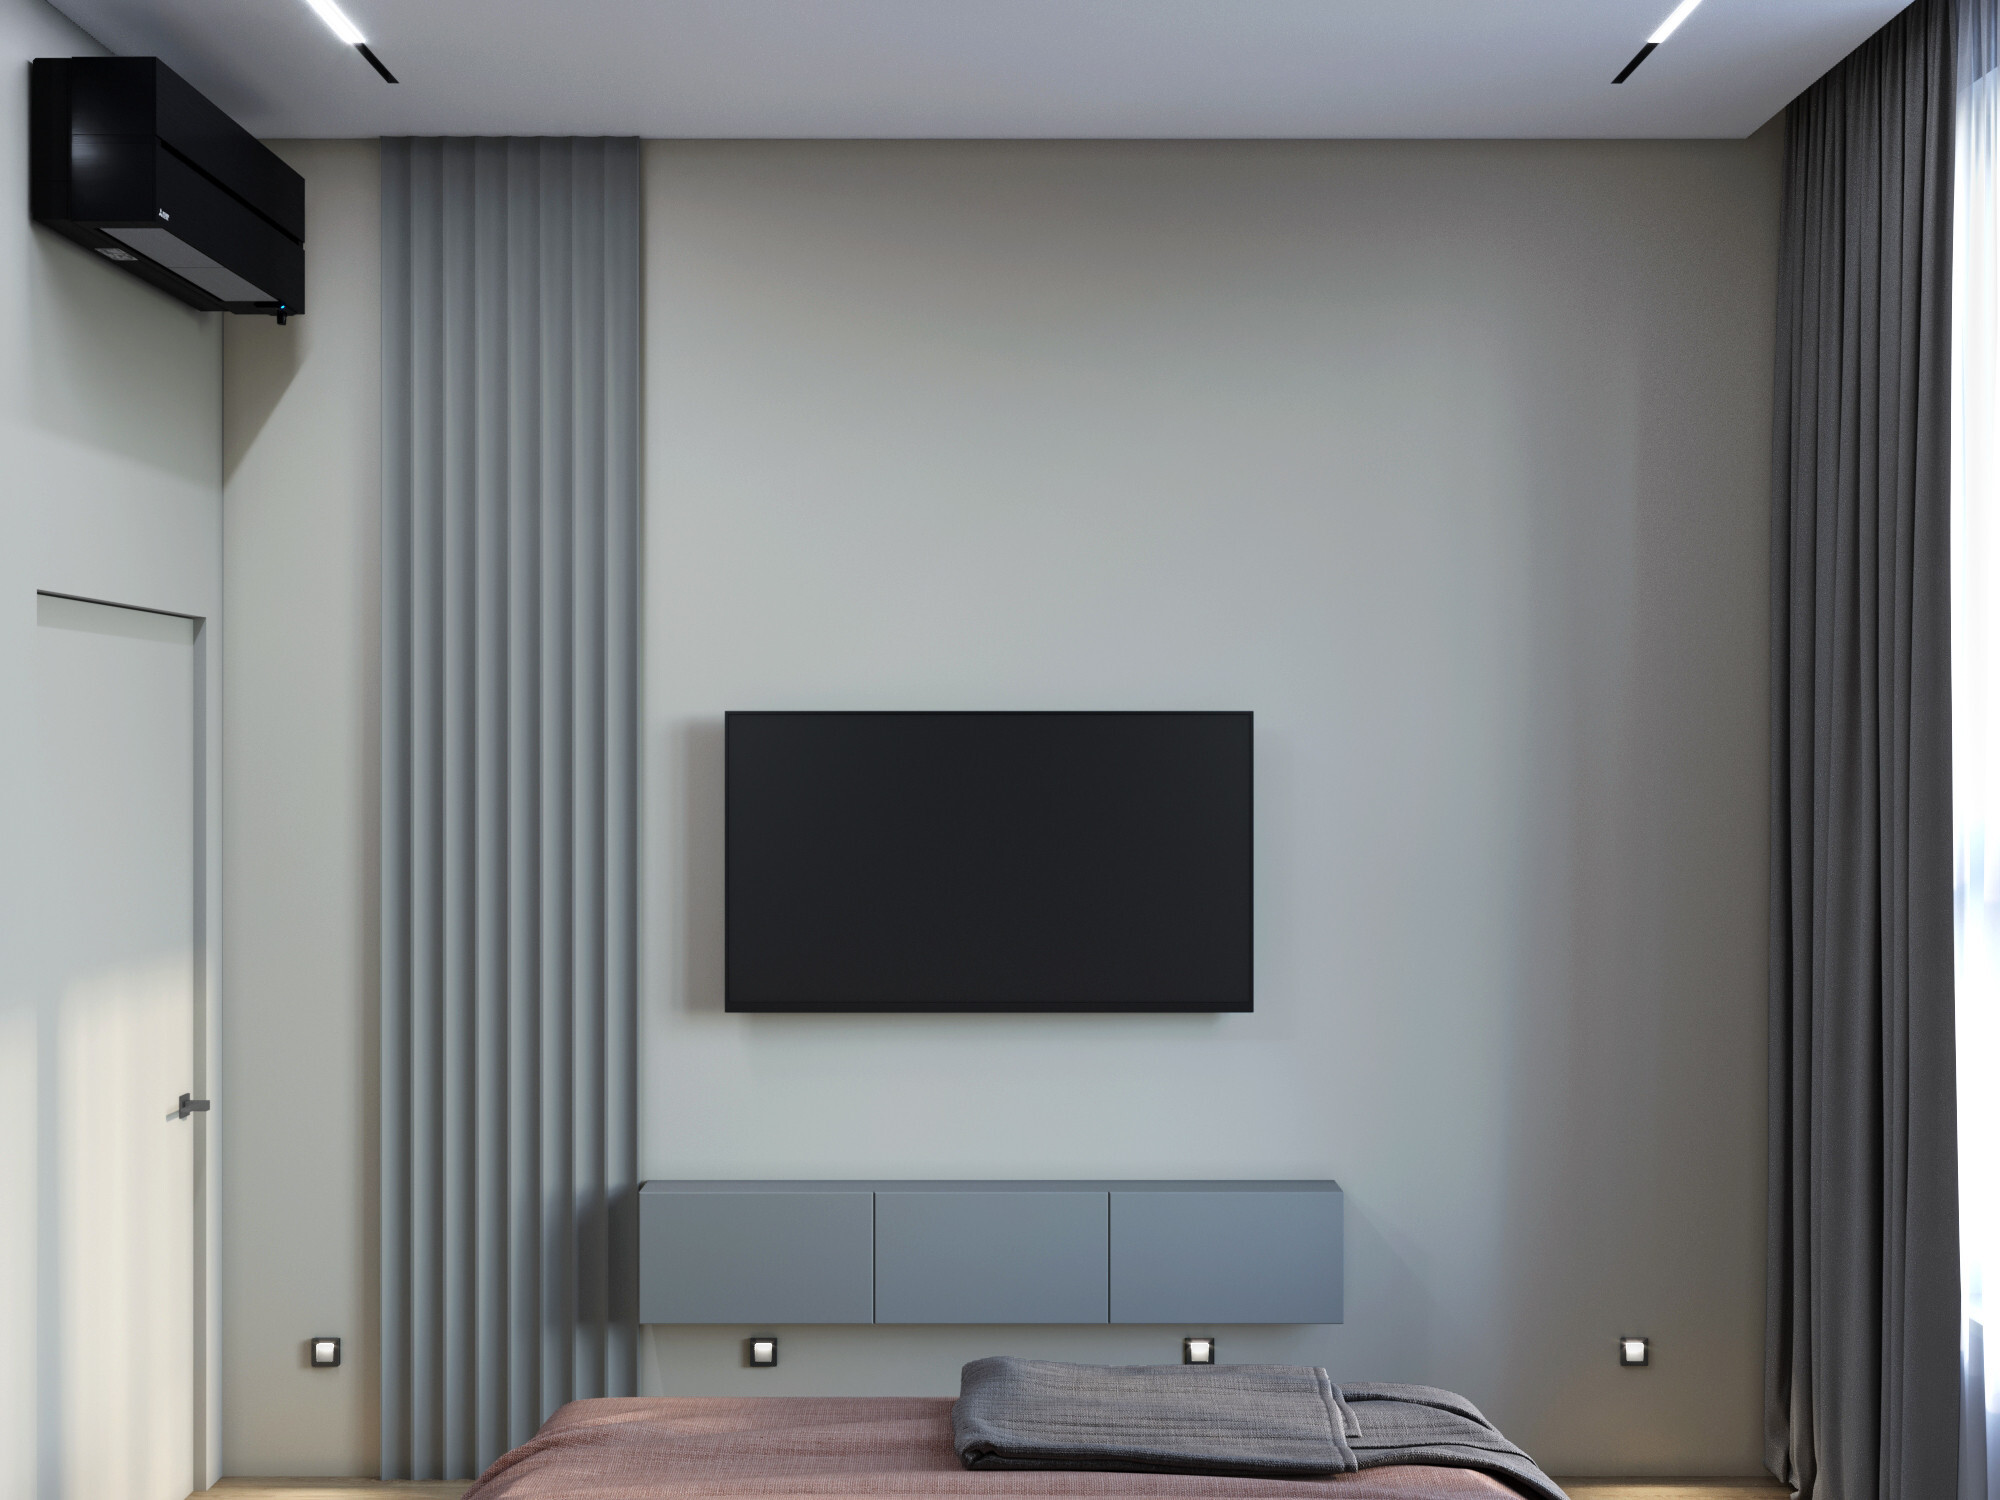 Интерьер гостиной с телевизором на рейках, вертикальными жалюзи, рейками с подсветкой и подсветкой настенной в современном стиле